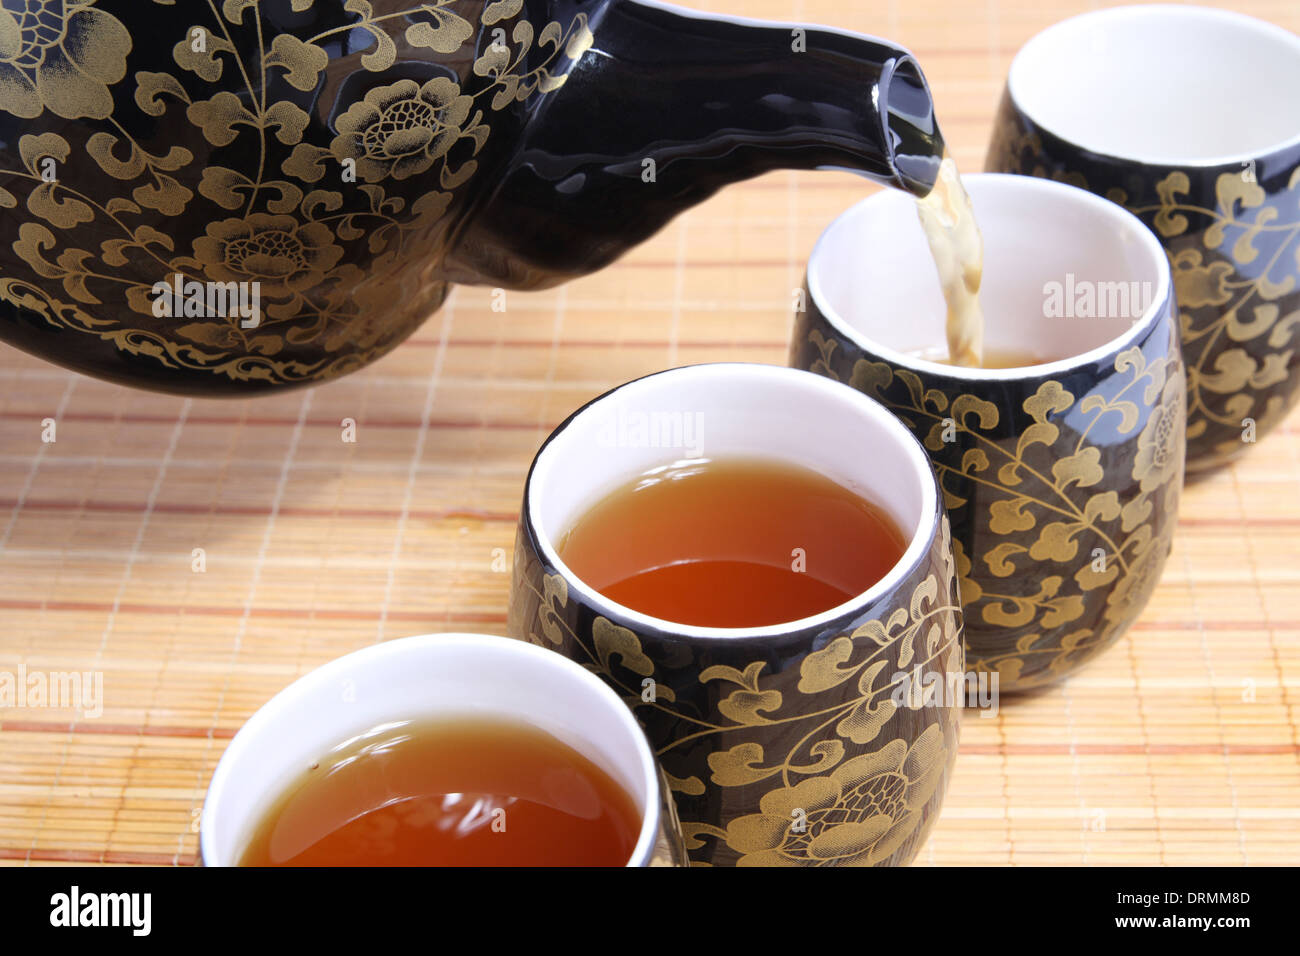 La culture du thé chinois Banque D'Images